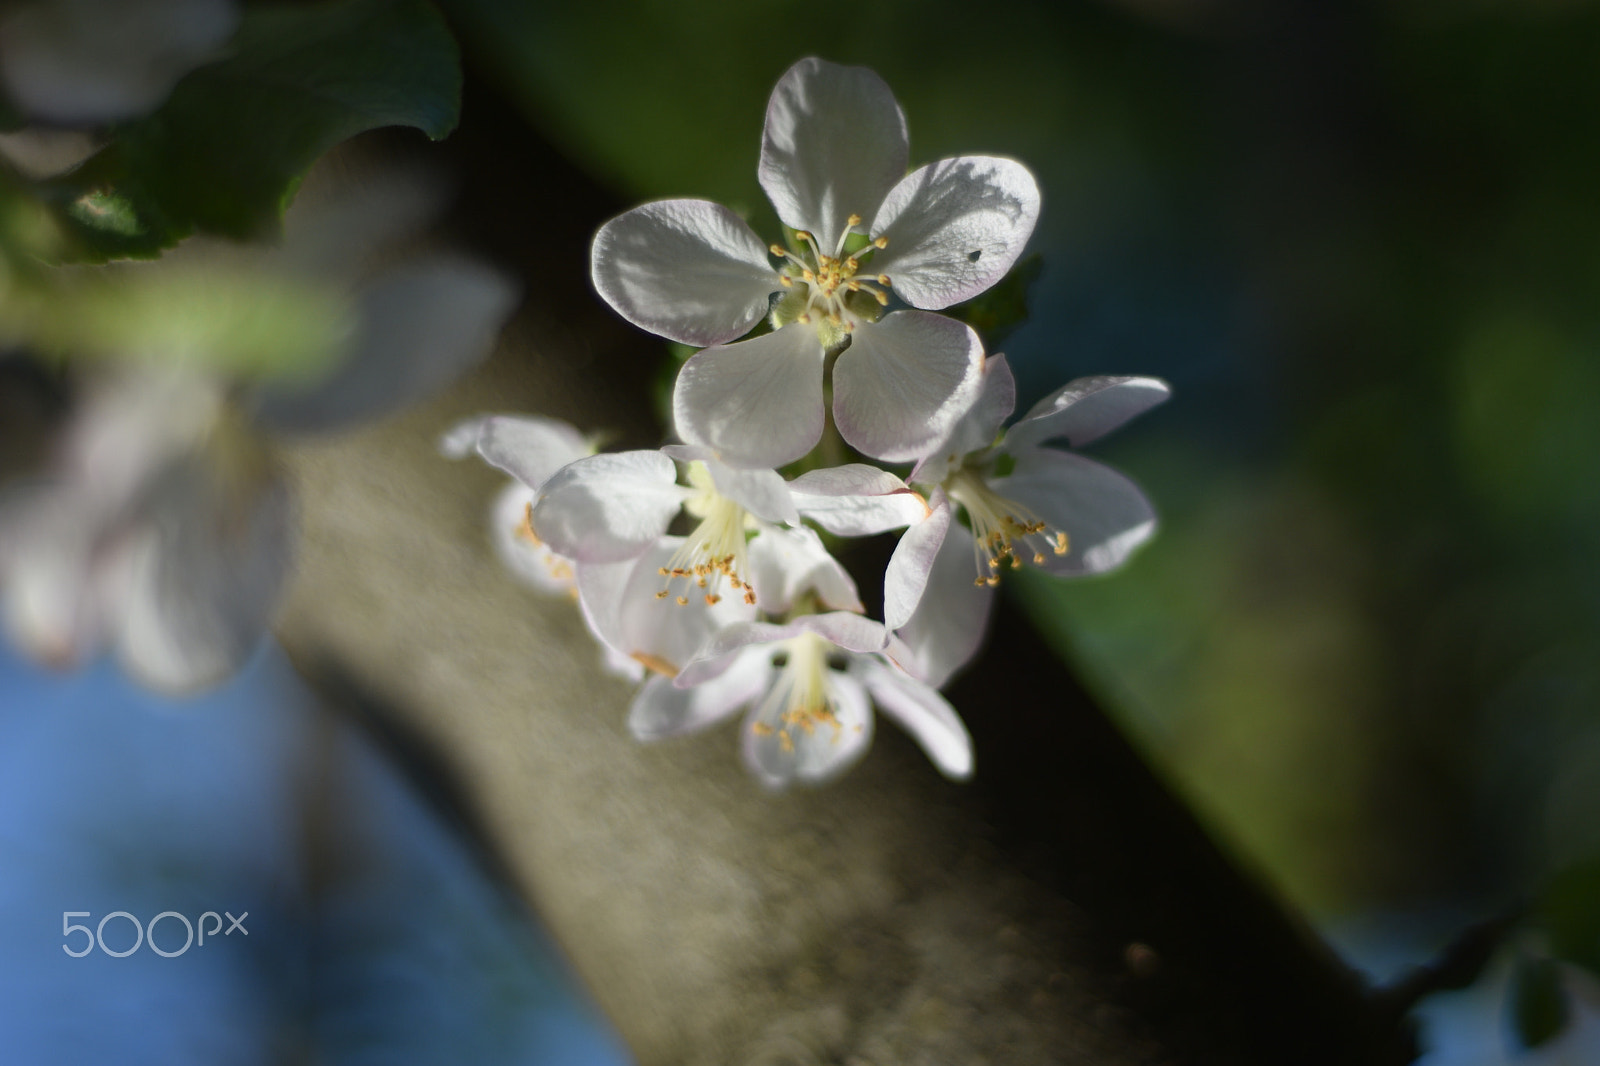 AF Nikkor 50mm f/1.8 sample photo. Apple tree flowers photography